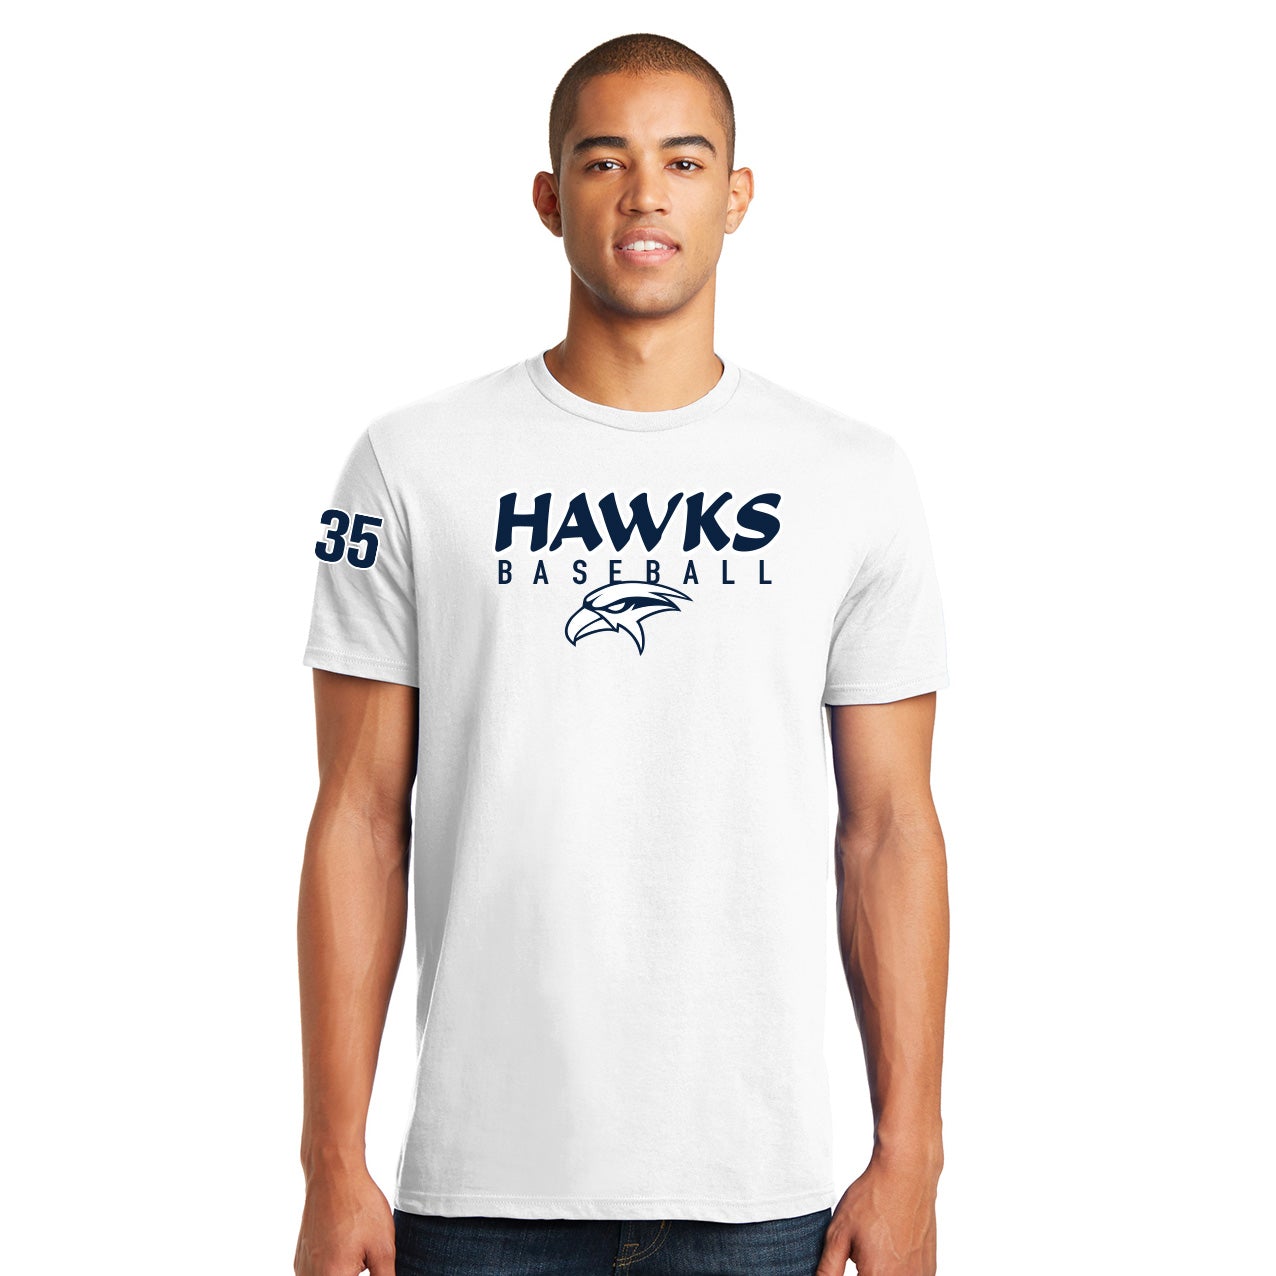 Hawks Baseball Short Sleeve Cotton Tee